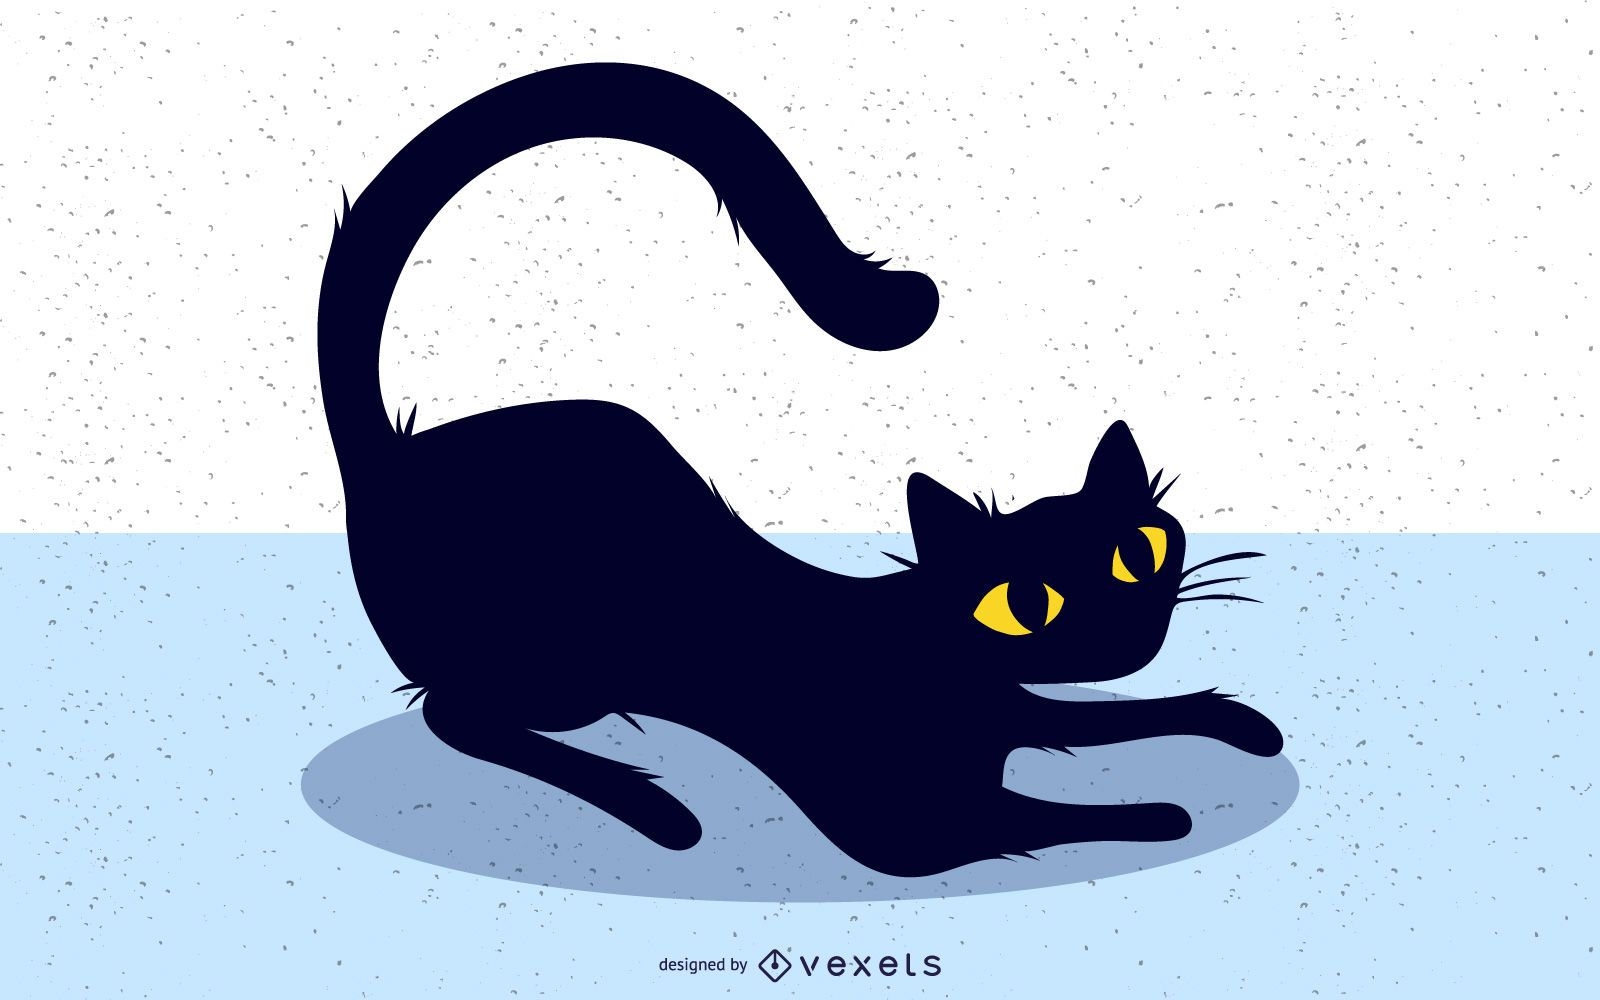 Black Cat Image 2